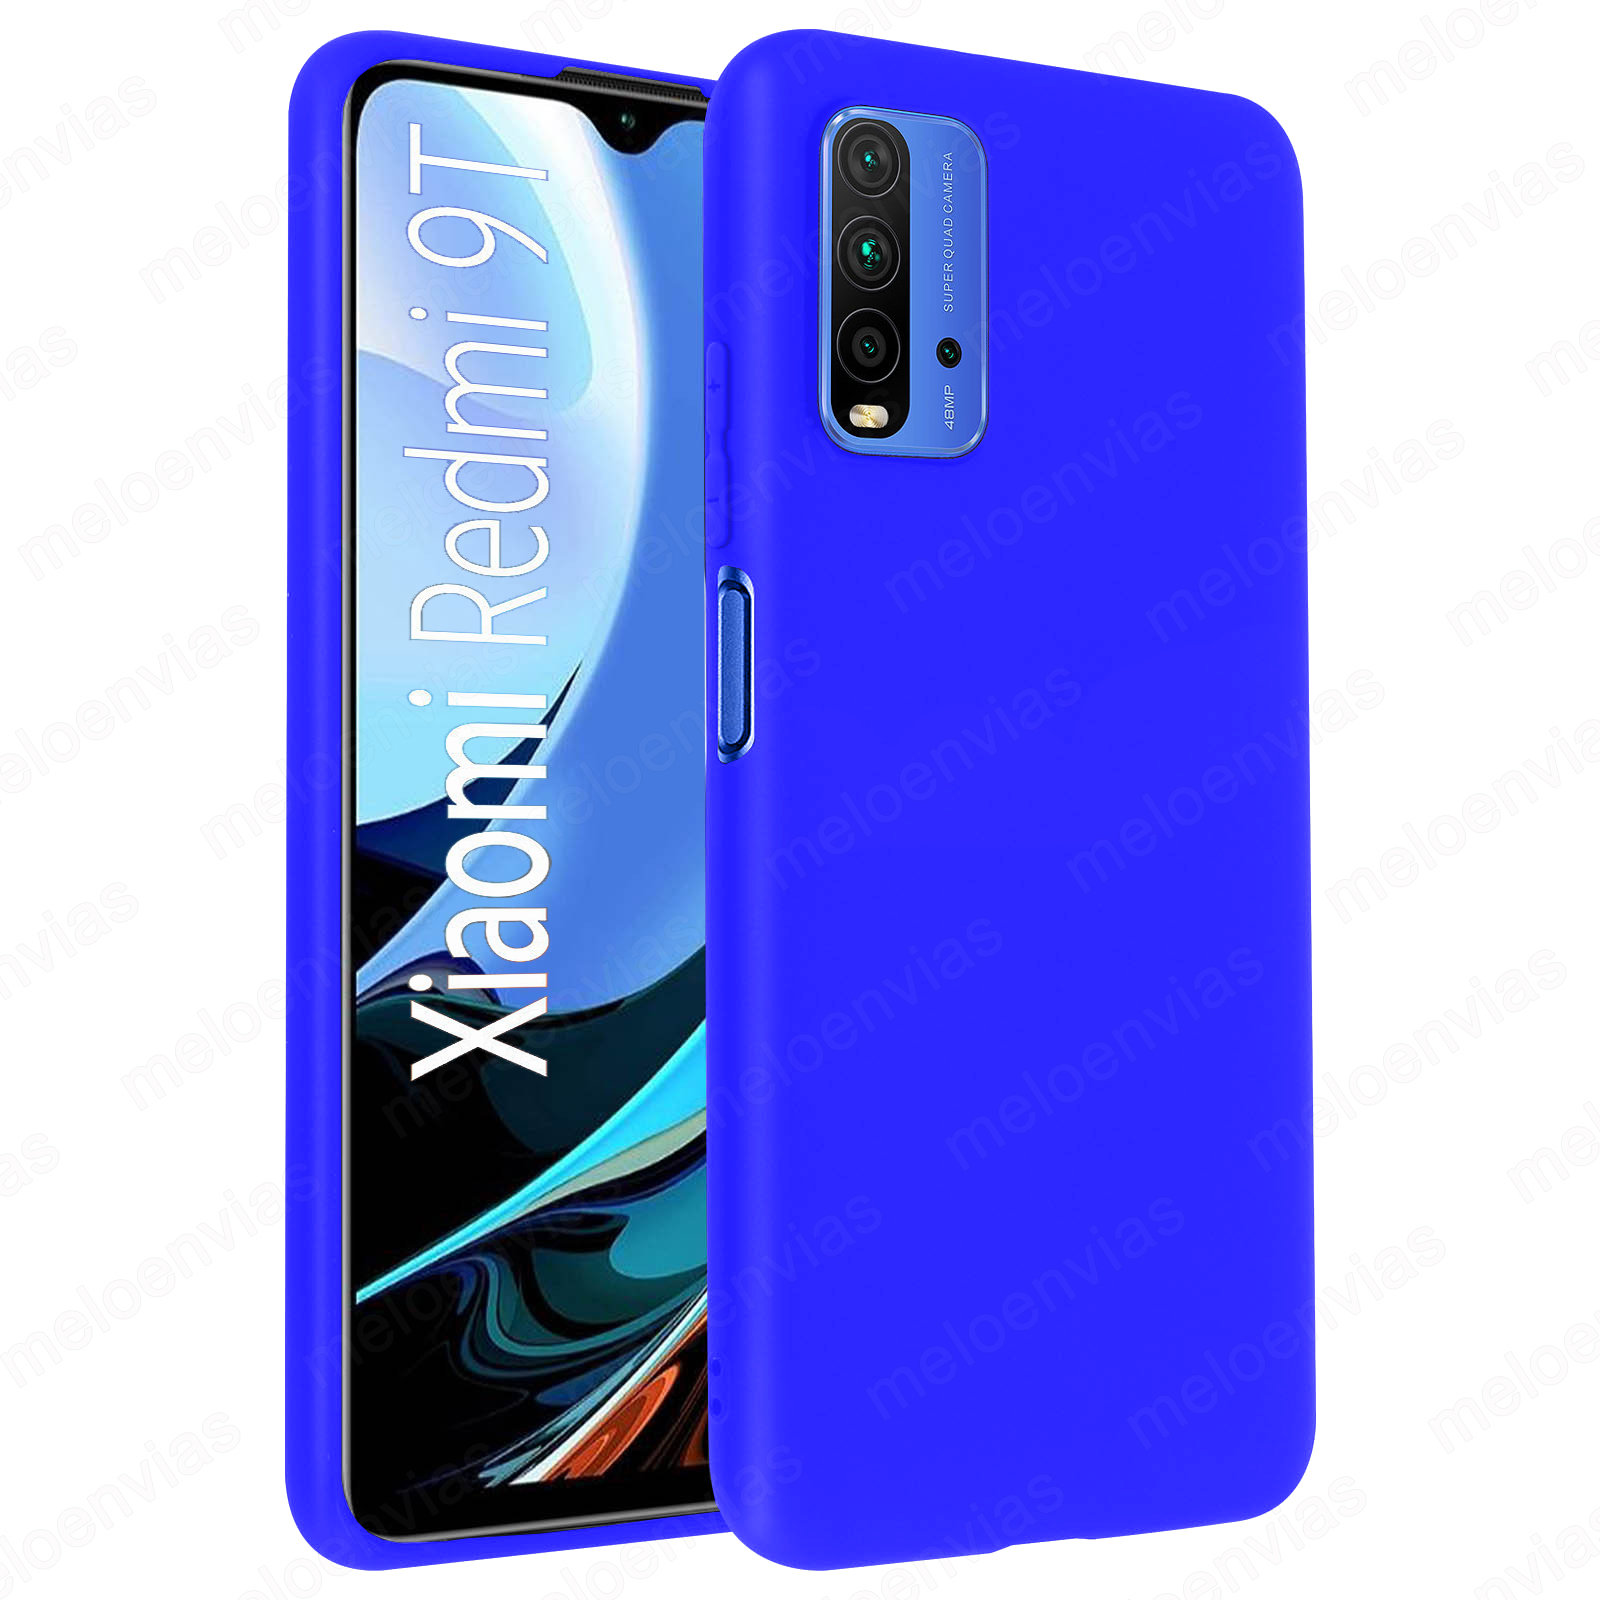 LEYAN Funda para Xiaomi Redmi 9T y 2 Piezas Cristal Templado TPU Silicona Gradiente Transparente Protección Carcasa Bumper Caso Case Cover con Shock- Absorción Morado/Azul 